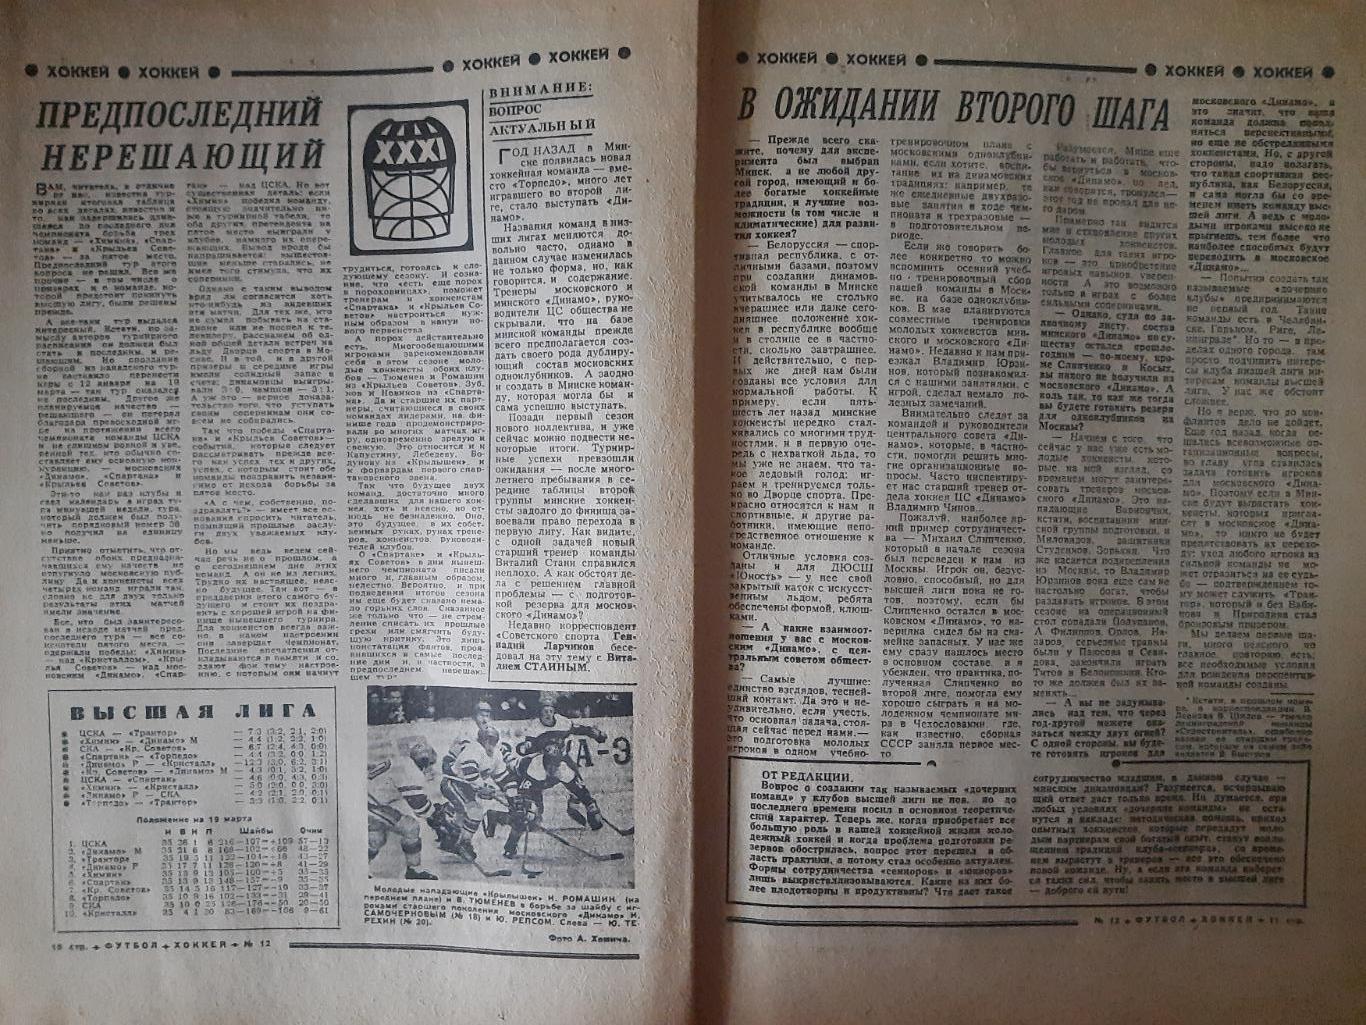 еженедельник футбол-хоккей #12,1977 3